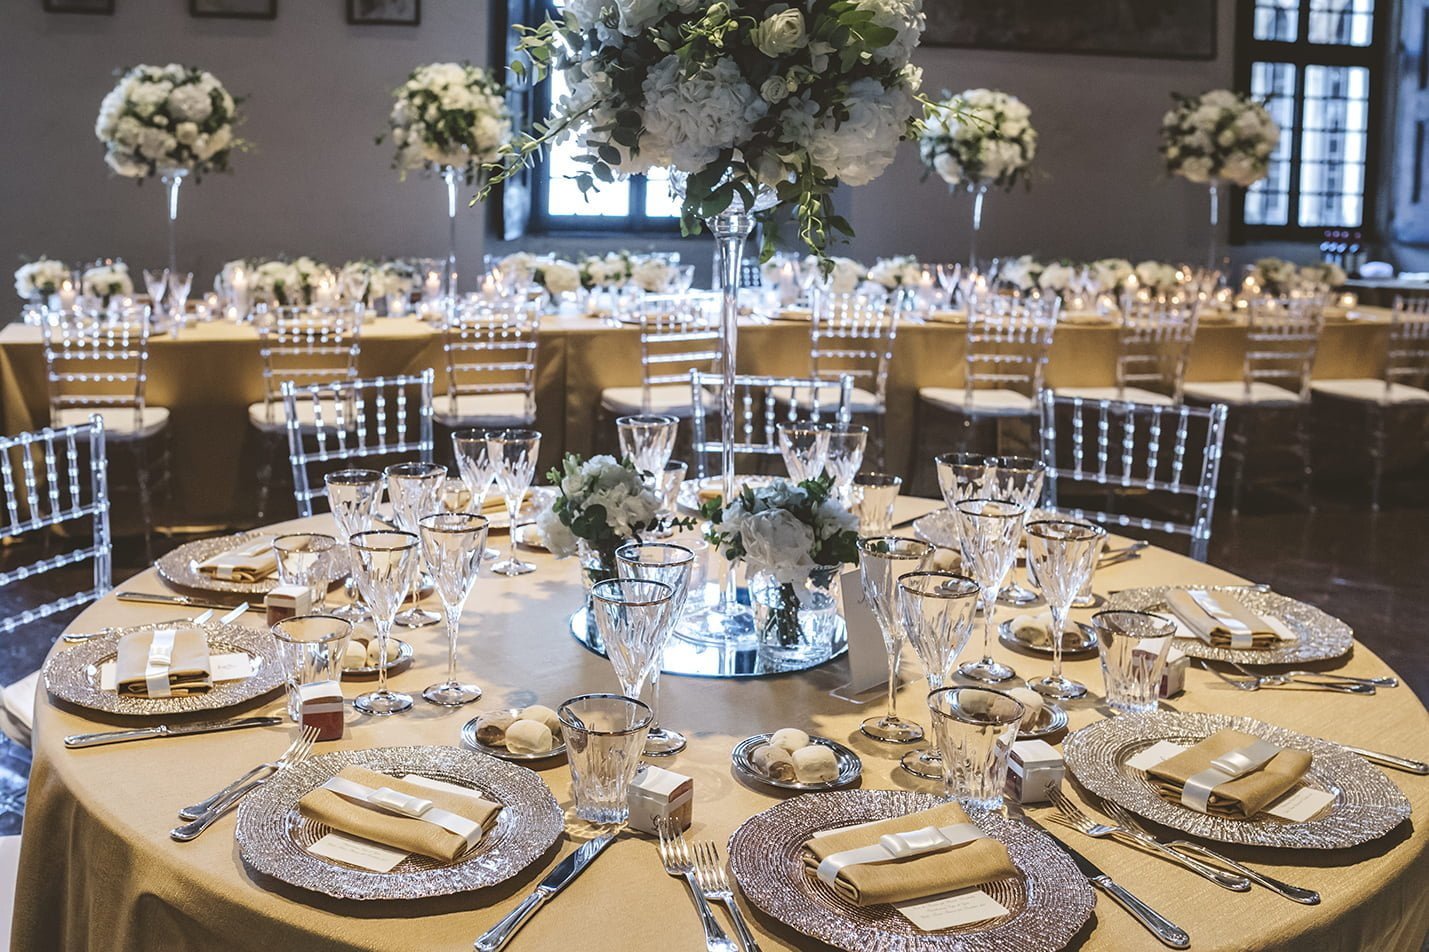 lago maggiore - SugarEvents Luxury Wedding and Event Planner